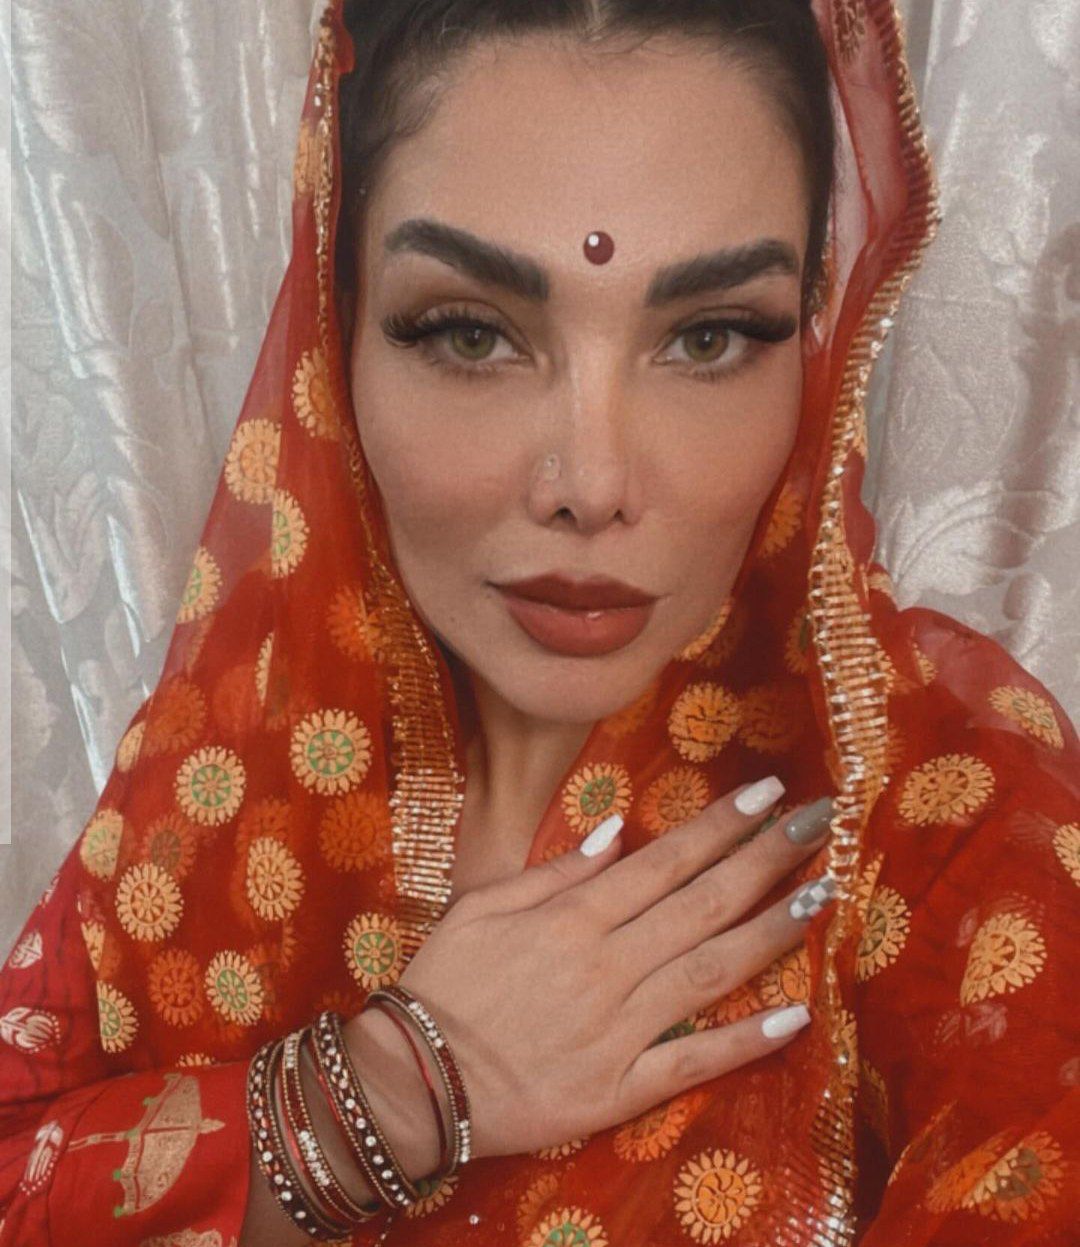 همسر مهران غفوریان با لباس هندی سوژه شد / ظاهر عجیب خانم بلاگر + عکس